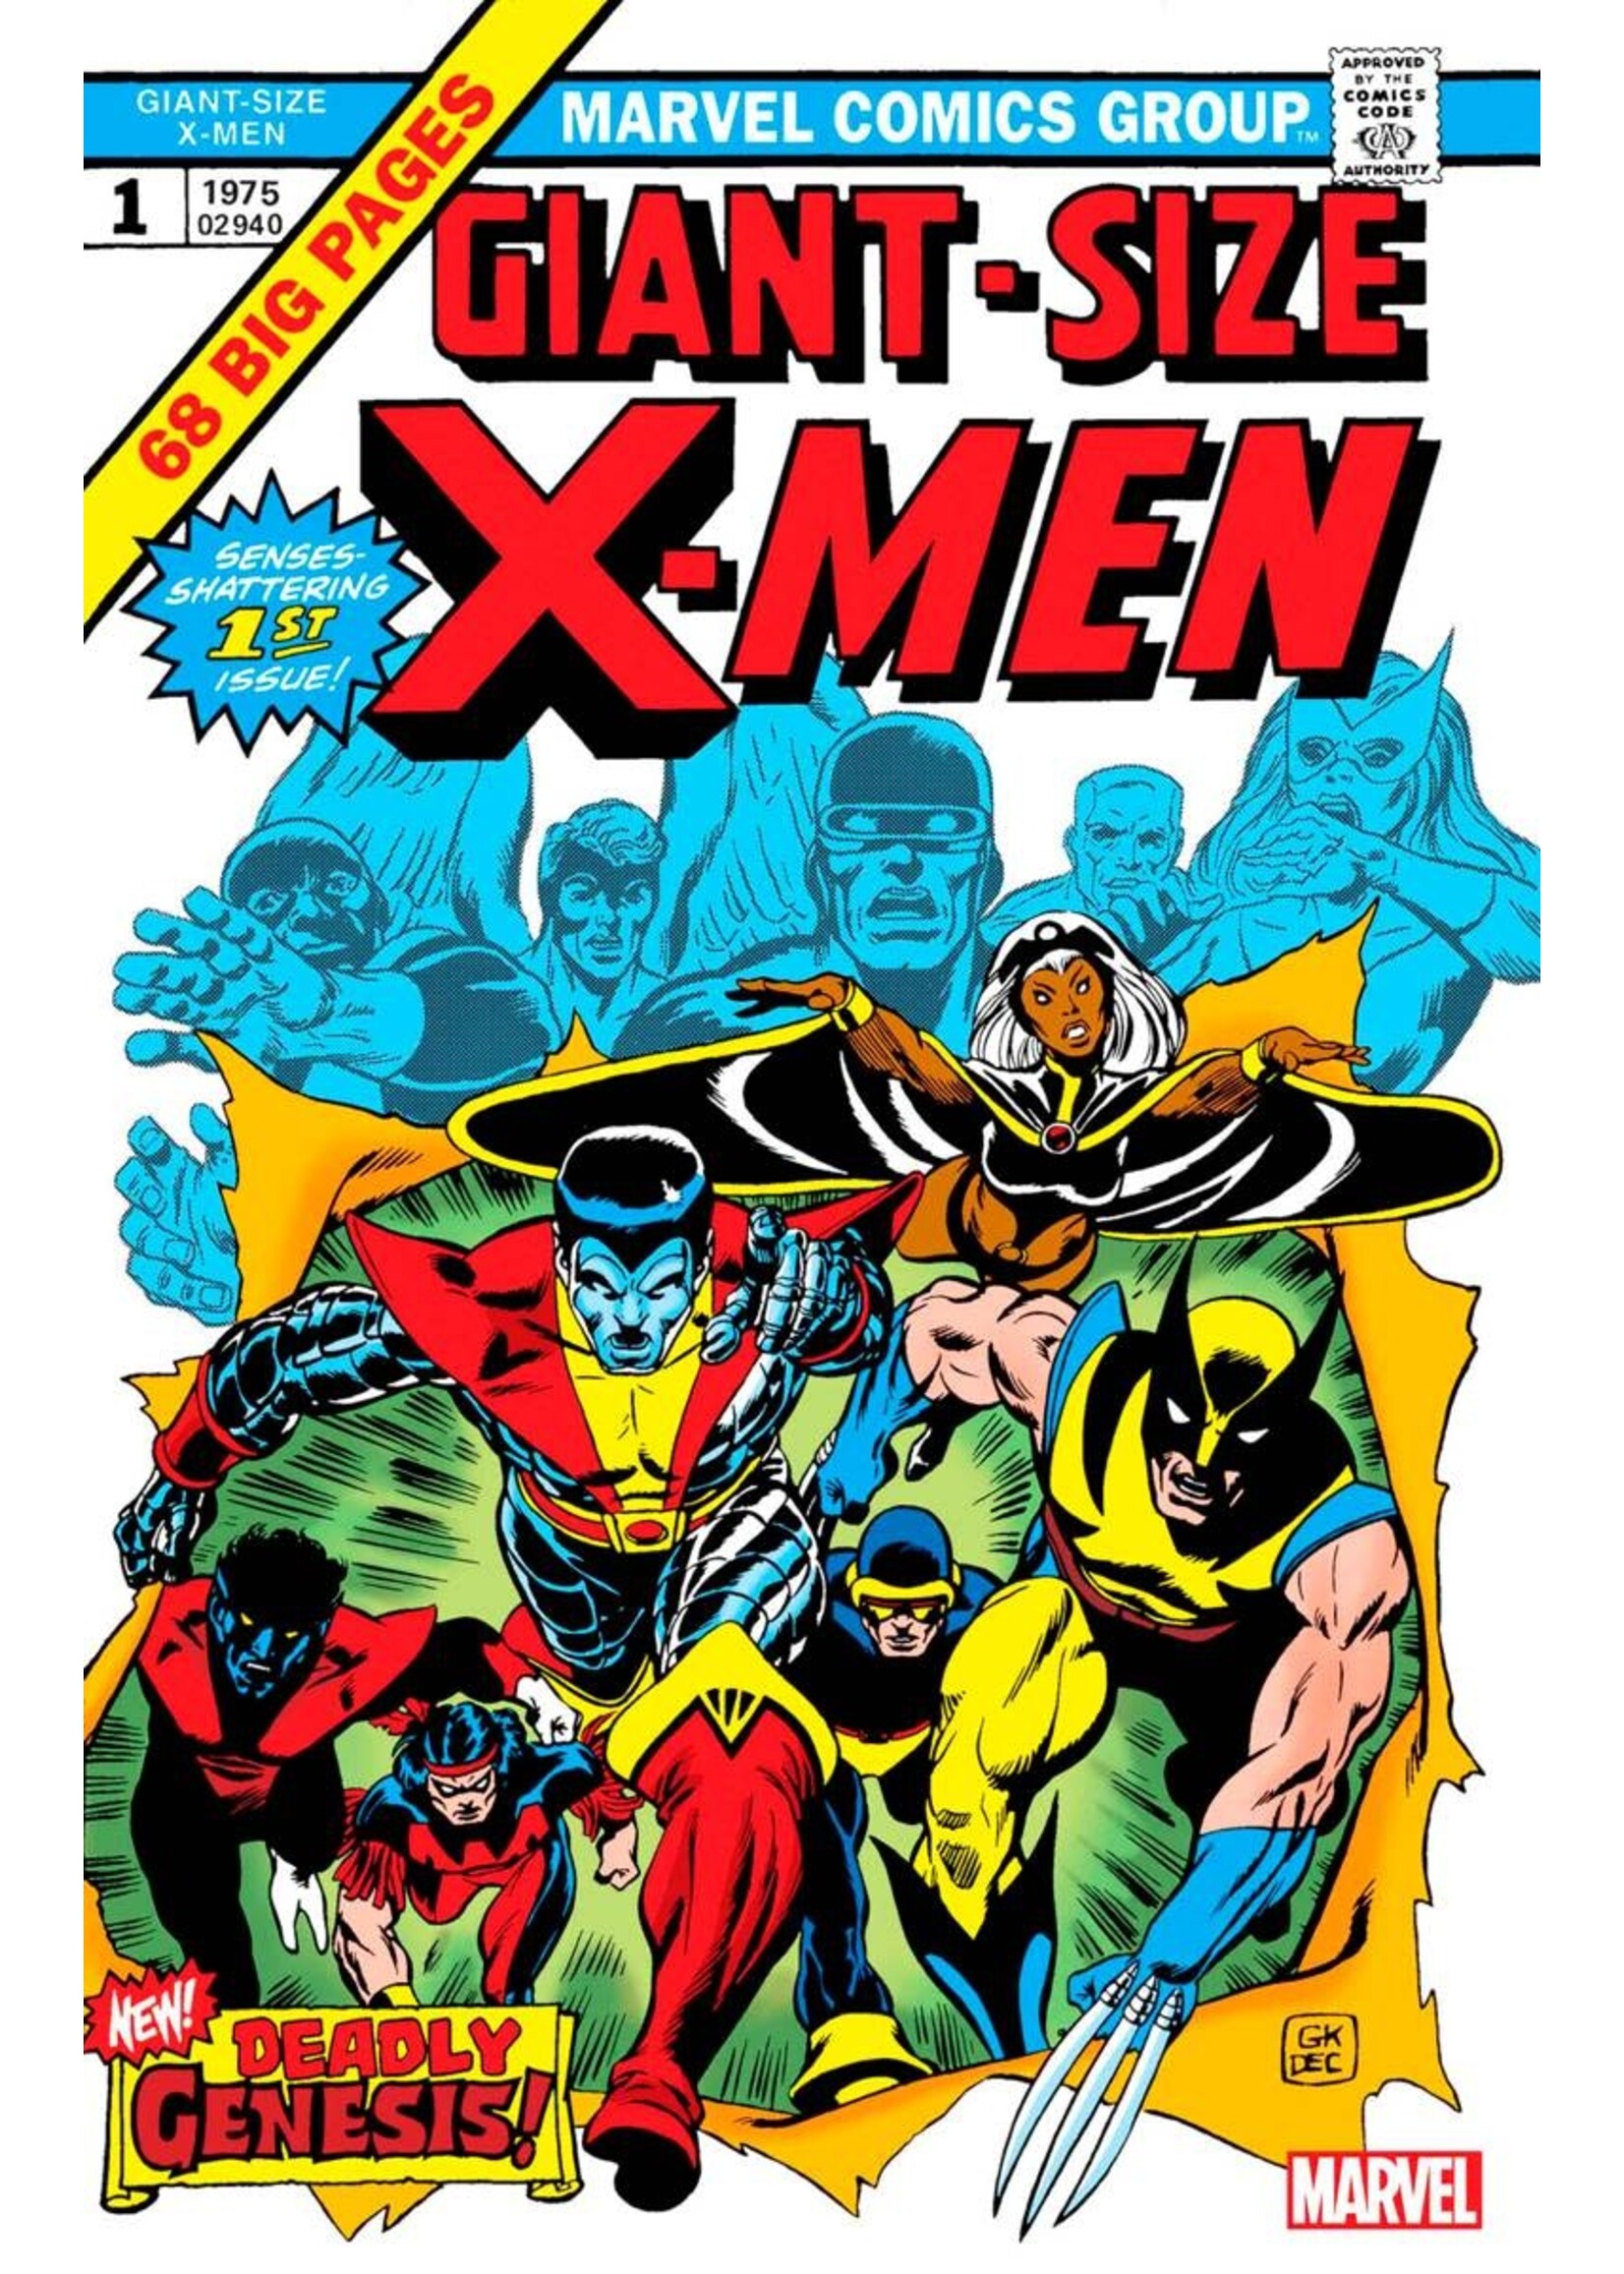 MARVEL COMICS GIANT-SIZE X-MEN #1 FACSIMILE EDITION